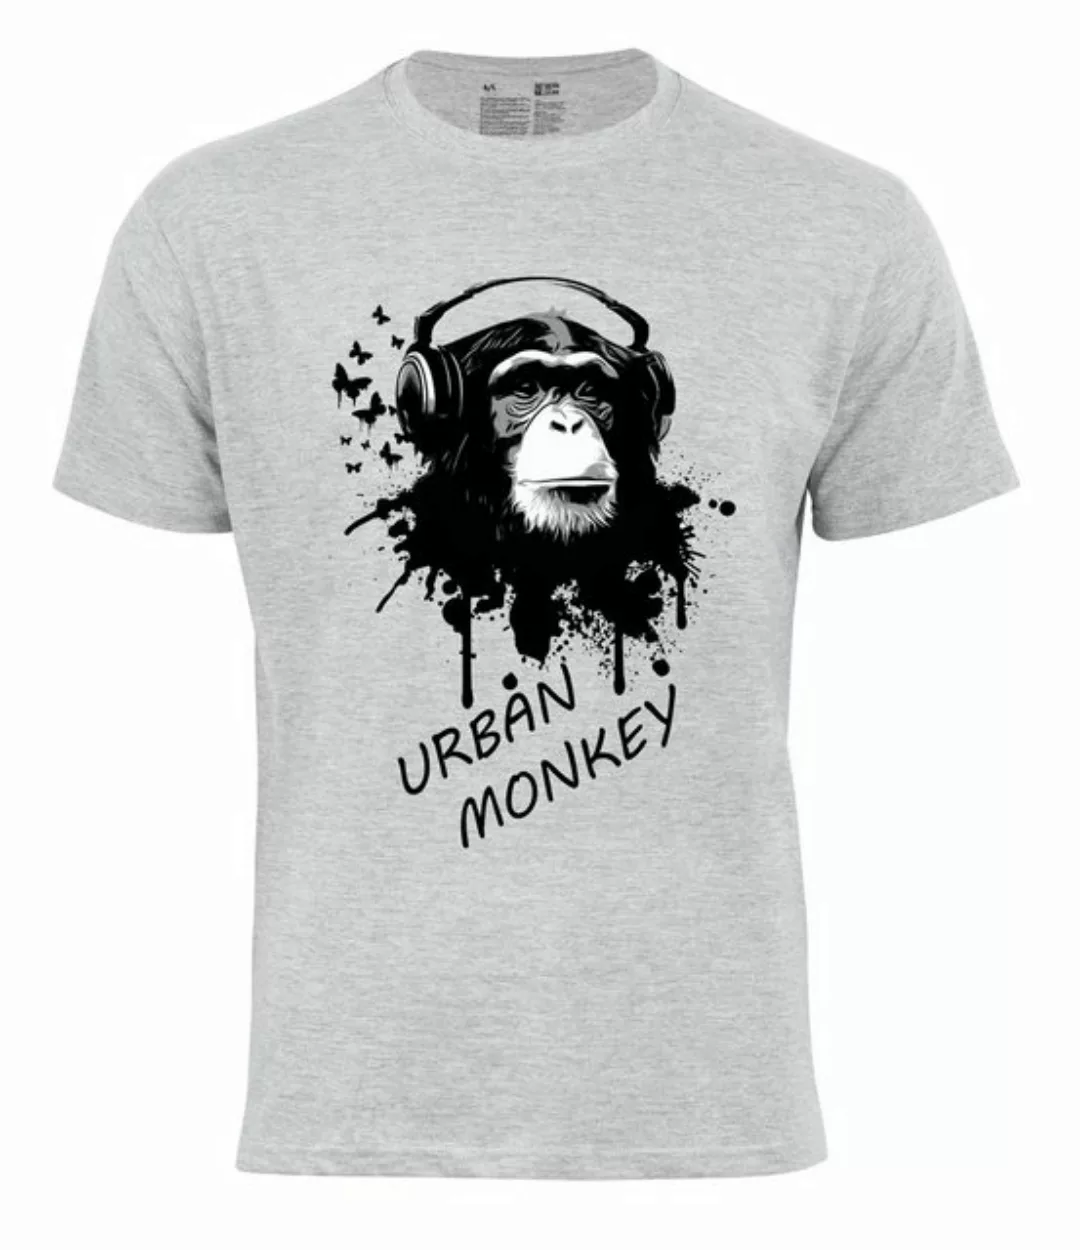 Cotton Prime® T-Shirt "URBAN MONKEY günstig online kaufen